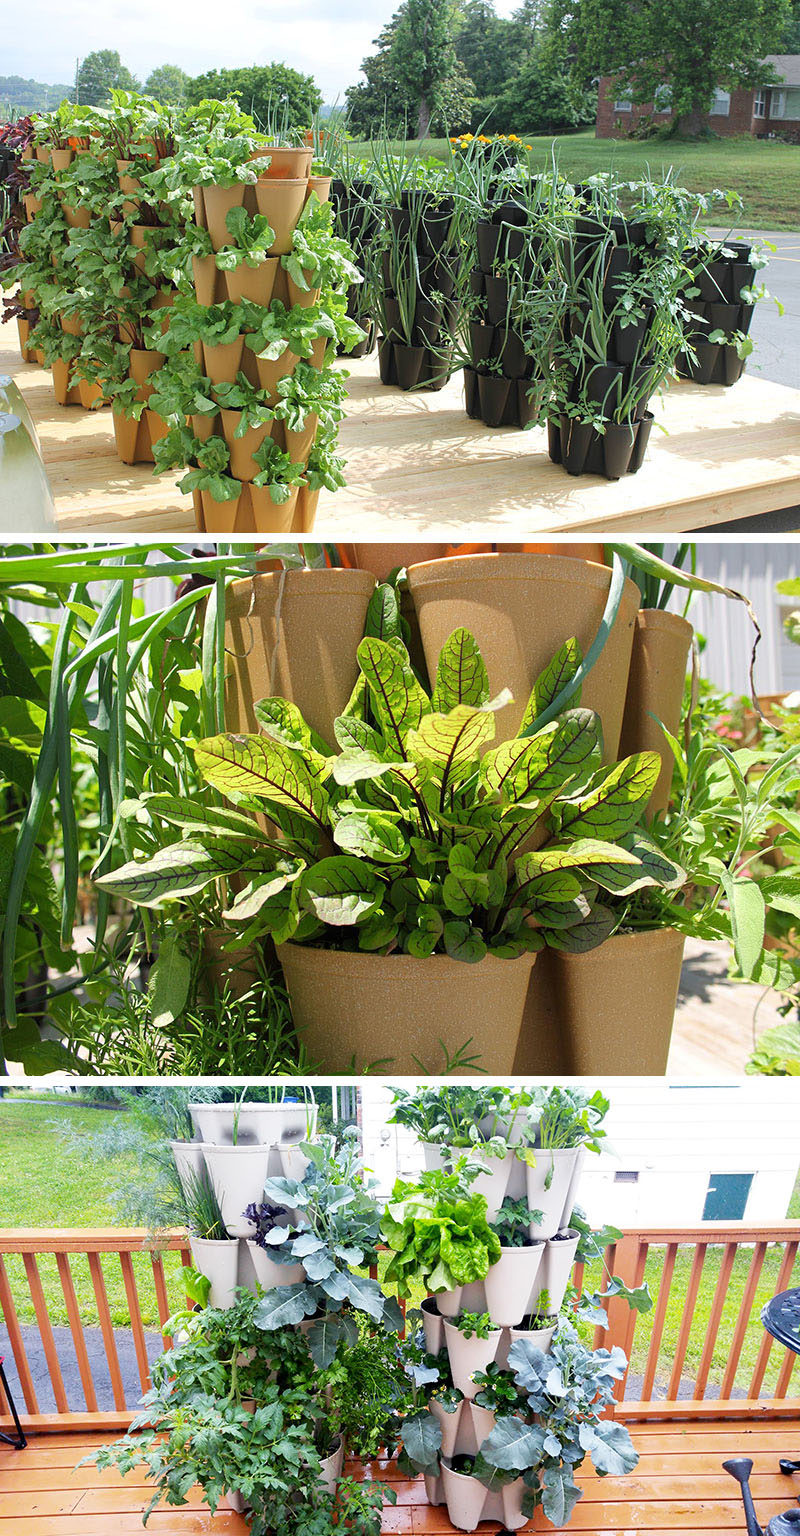 Growing herbs in an indoor herb greenhouse
